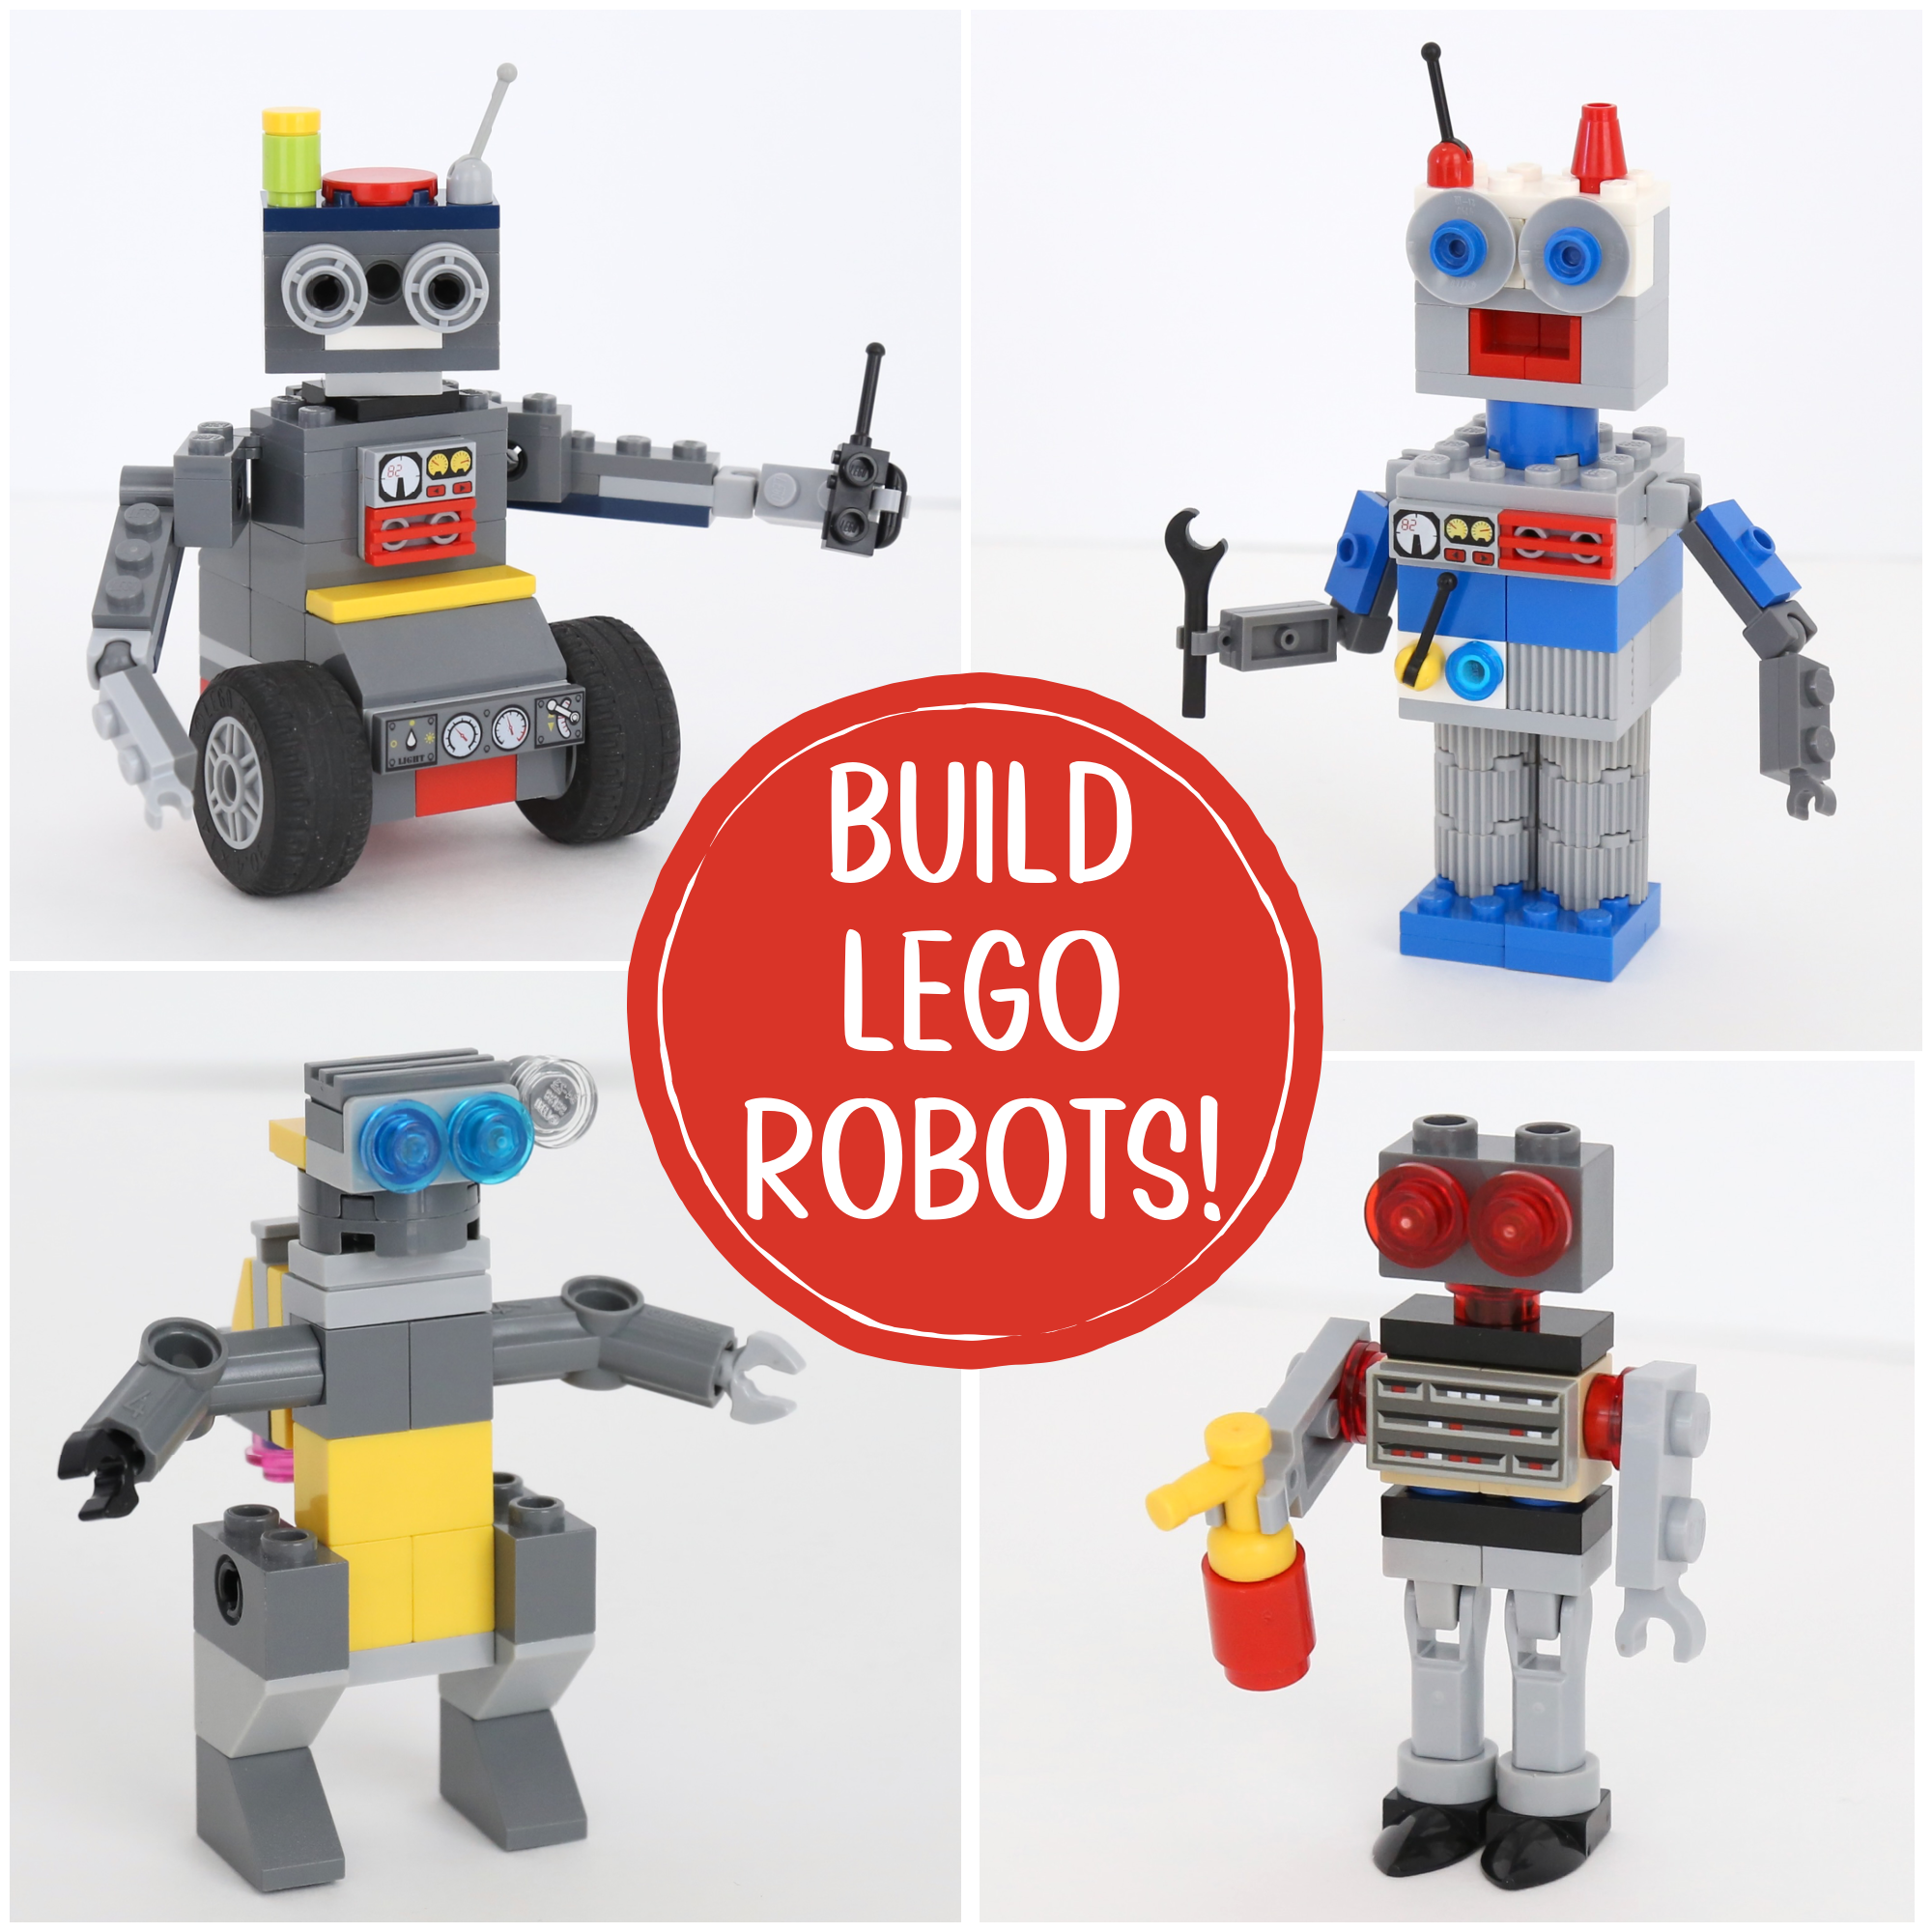 Om indstilling Fortrolig tidligere How to Build Cool LEGO Robots - Frugal Fun For Boys and Girls